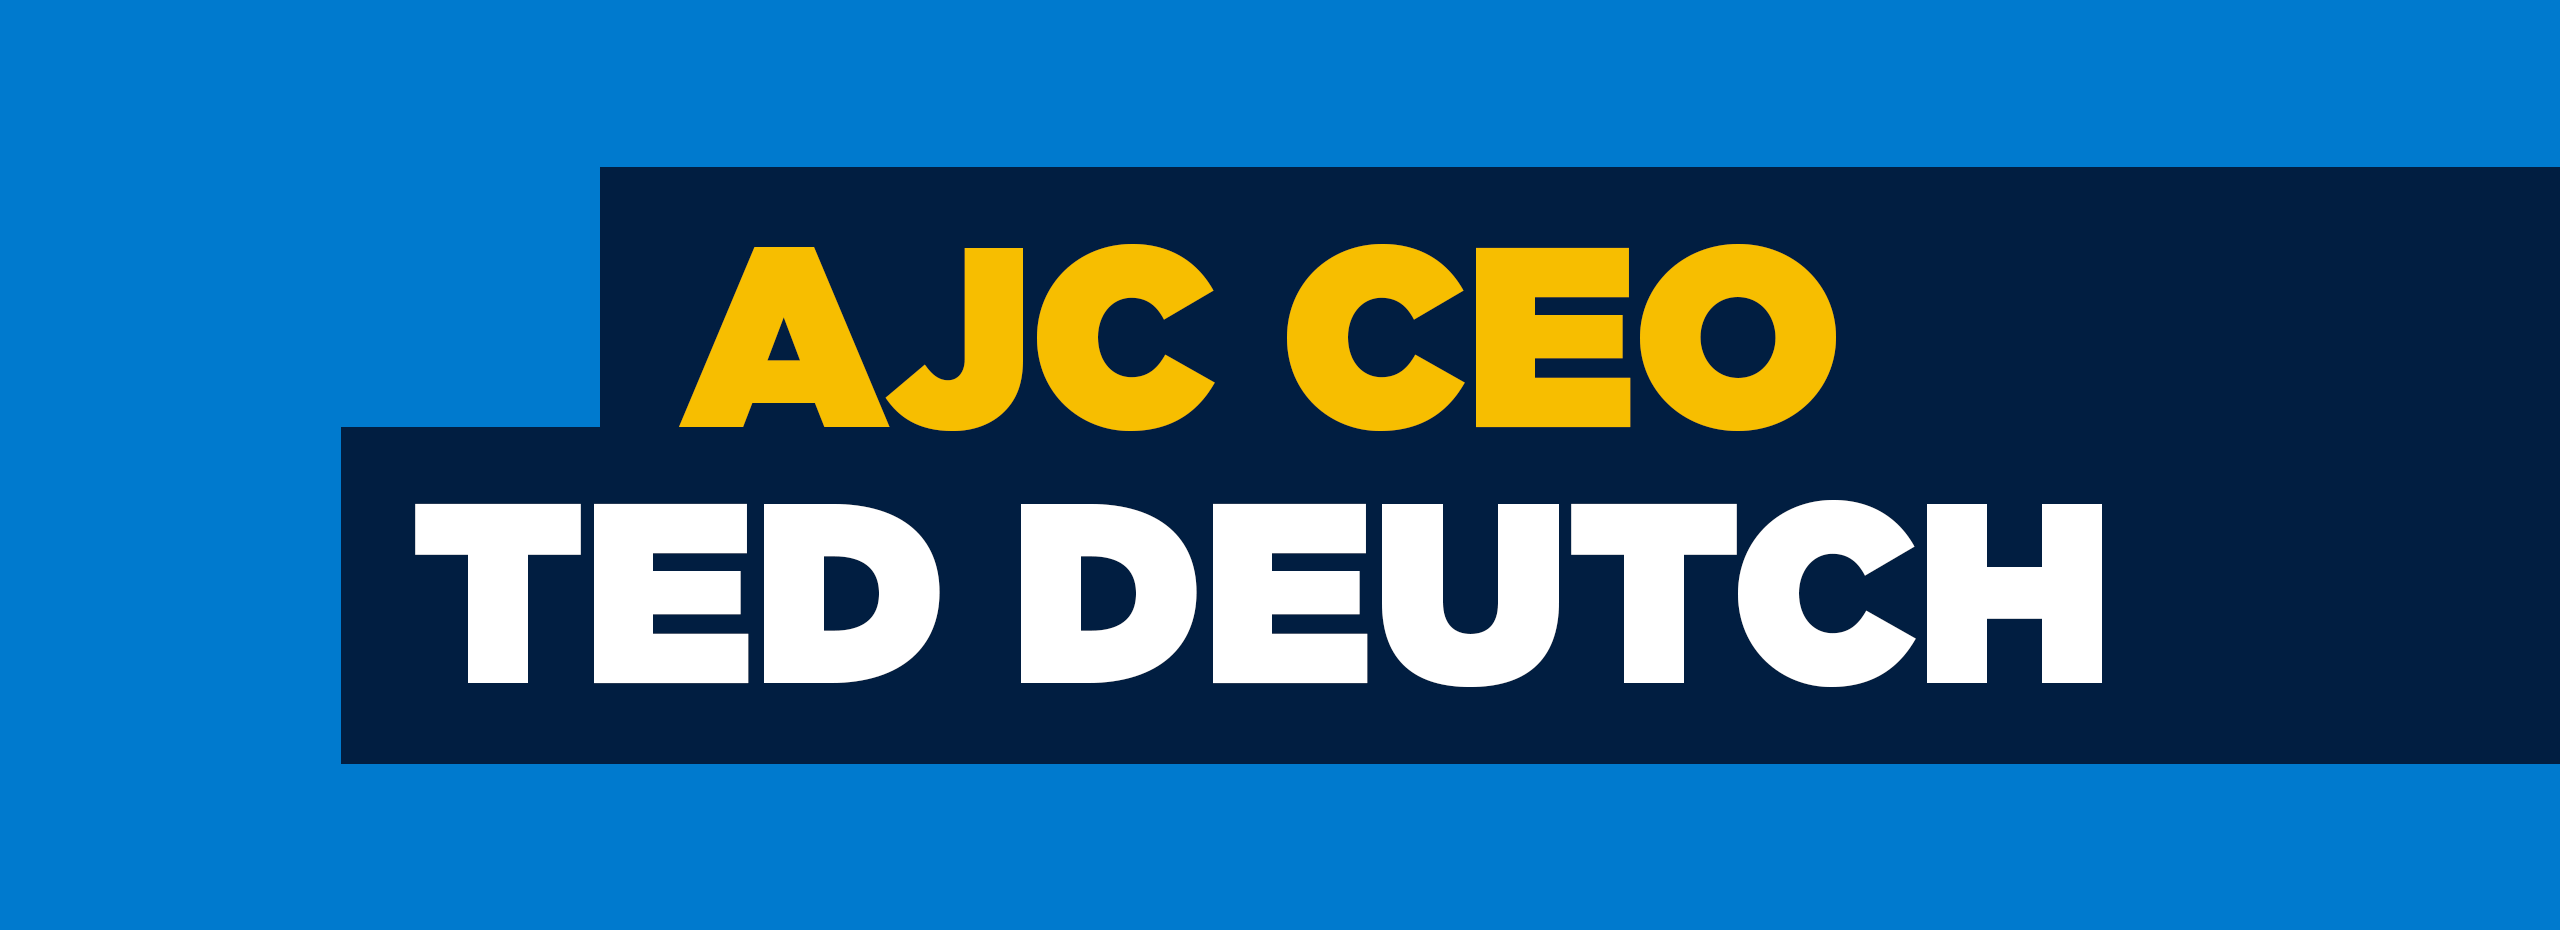 AJC CEO Ted Deutch